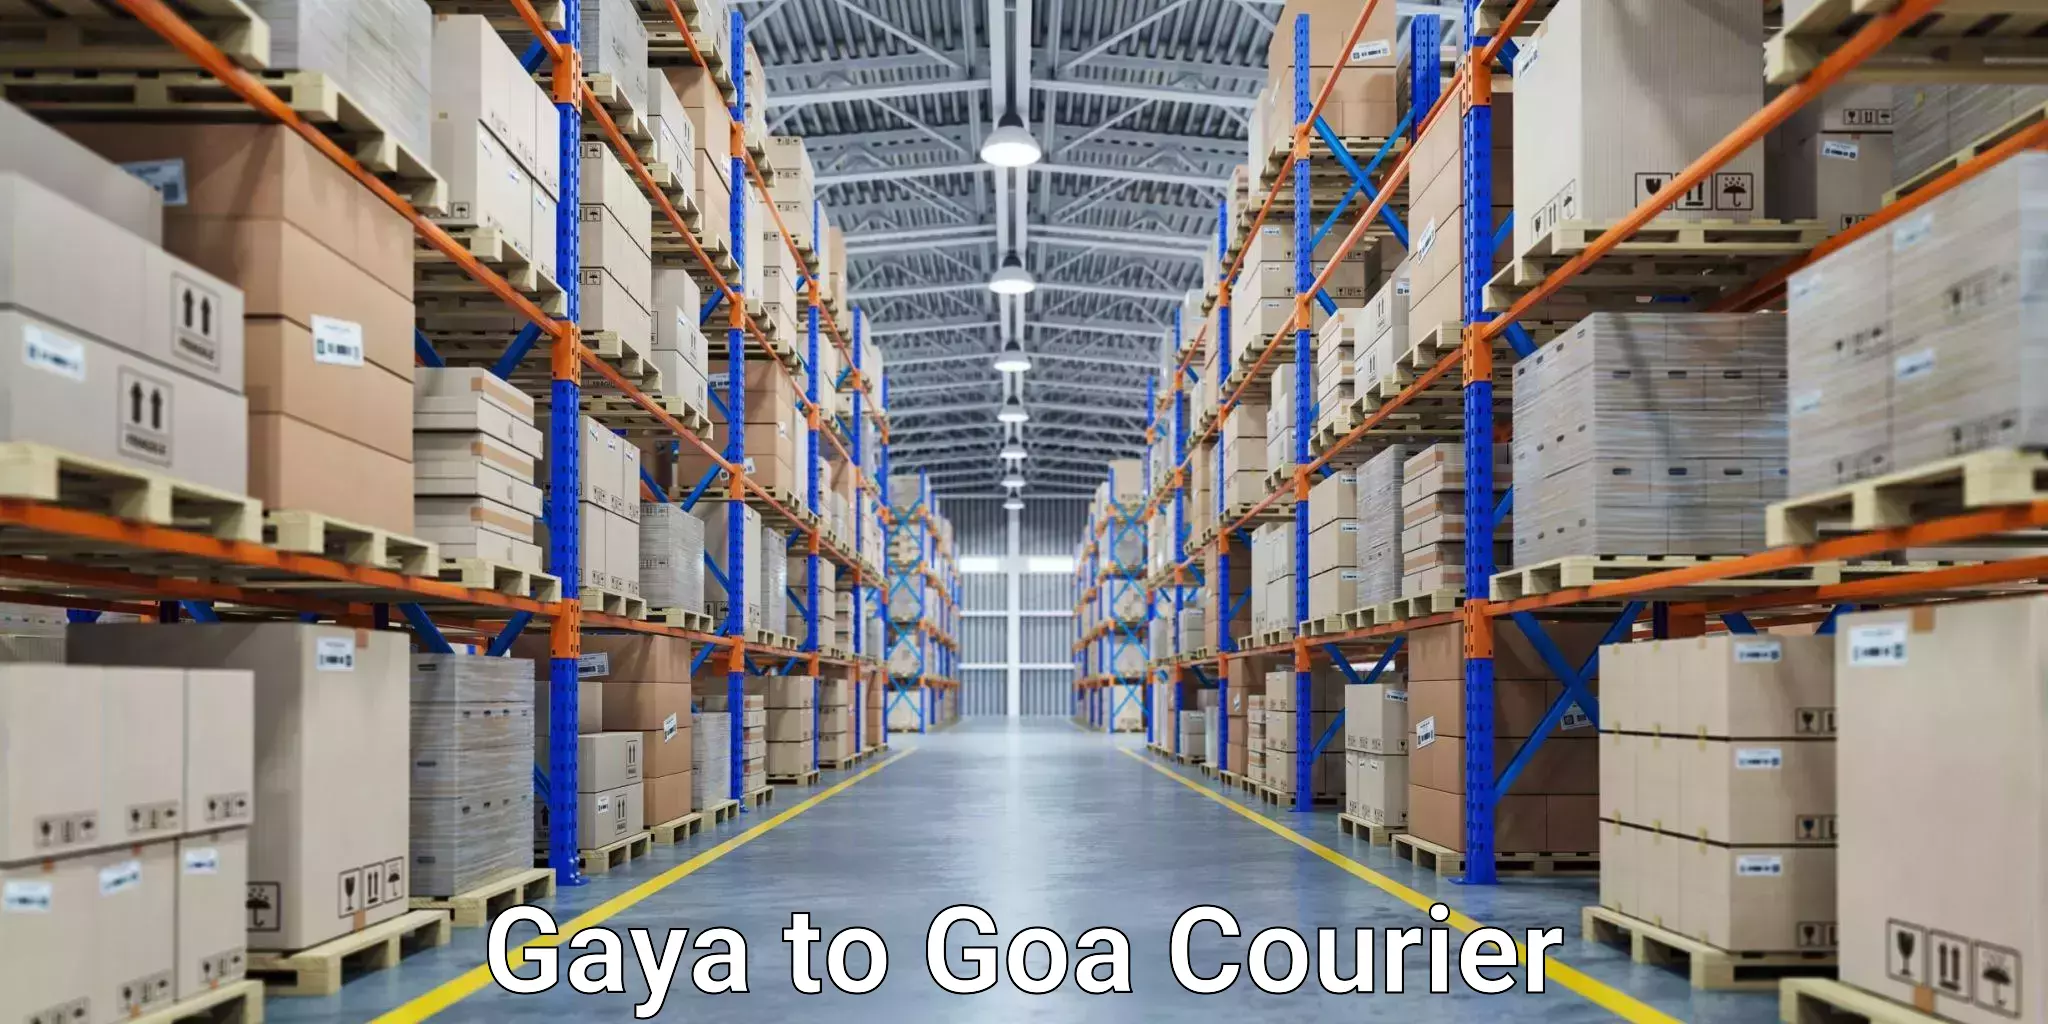 Pharmaceutical courier Gaya to Goa